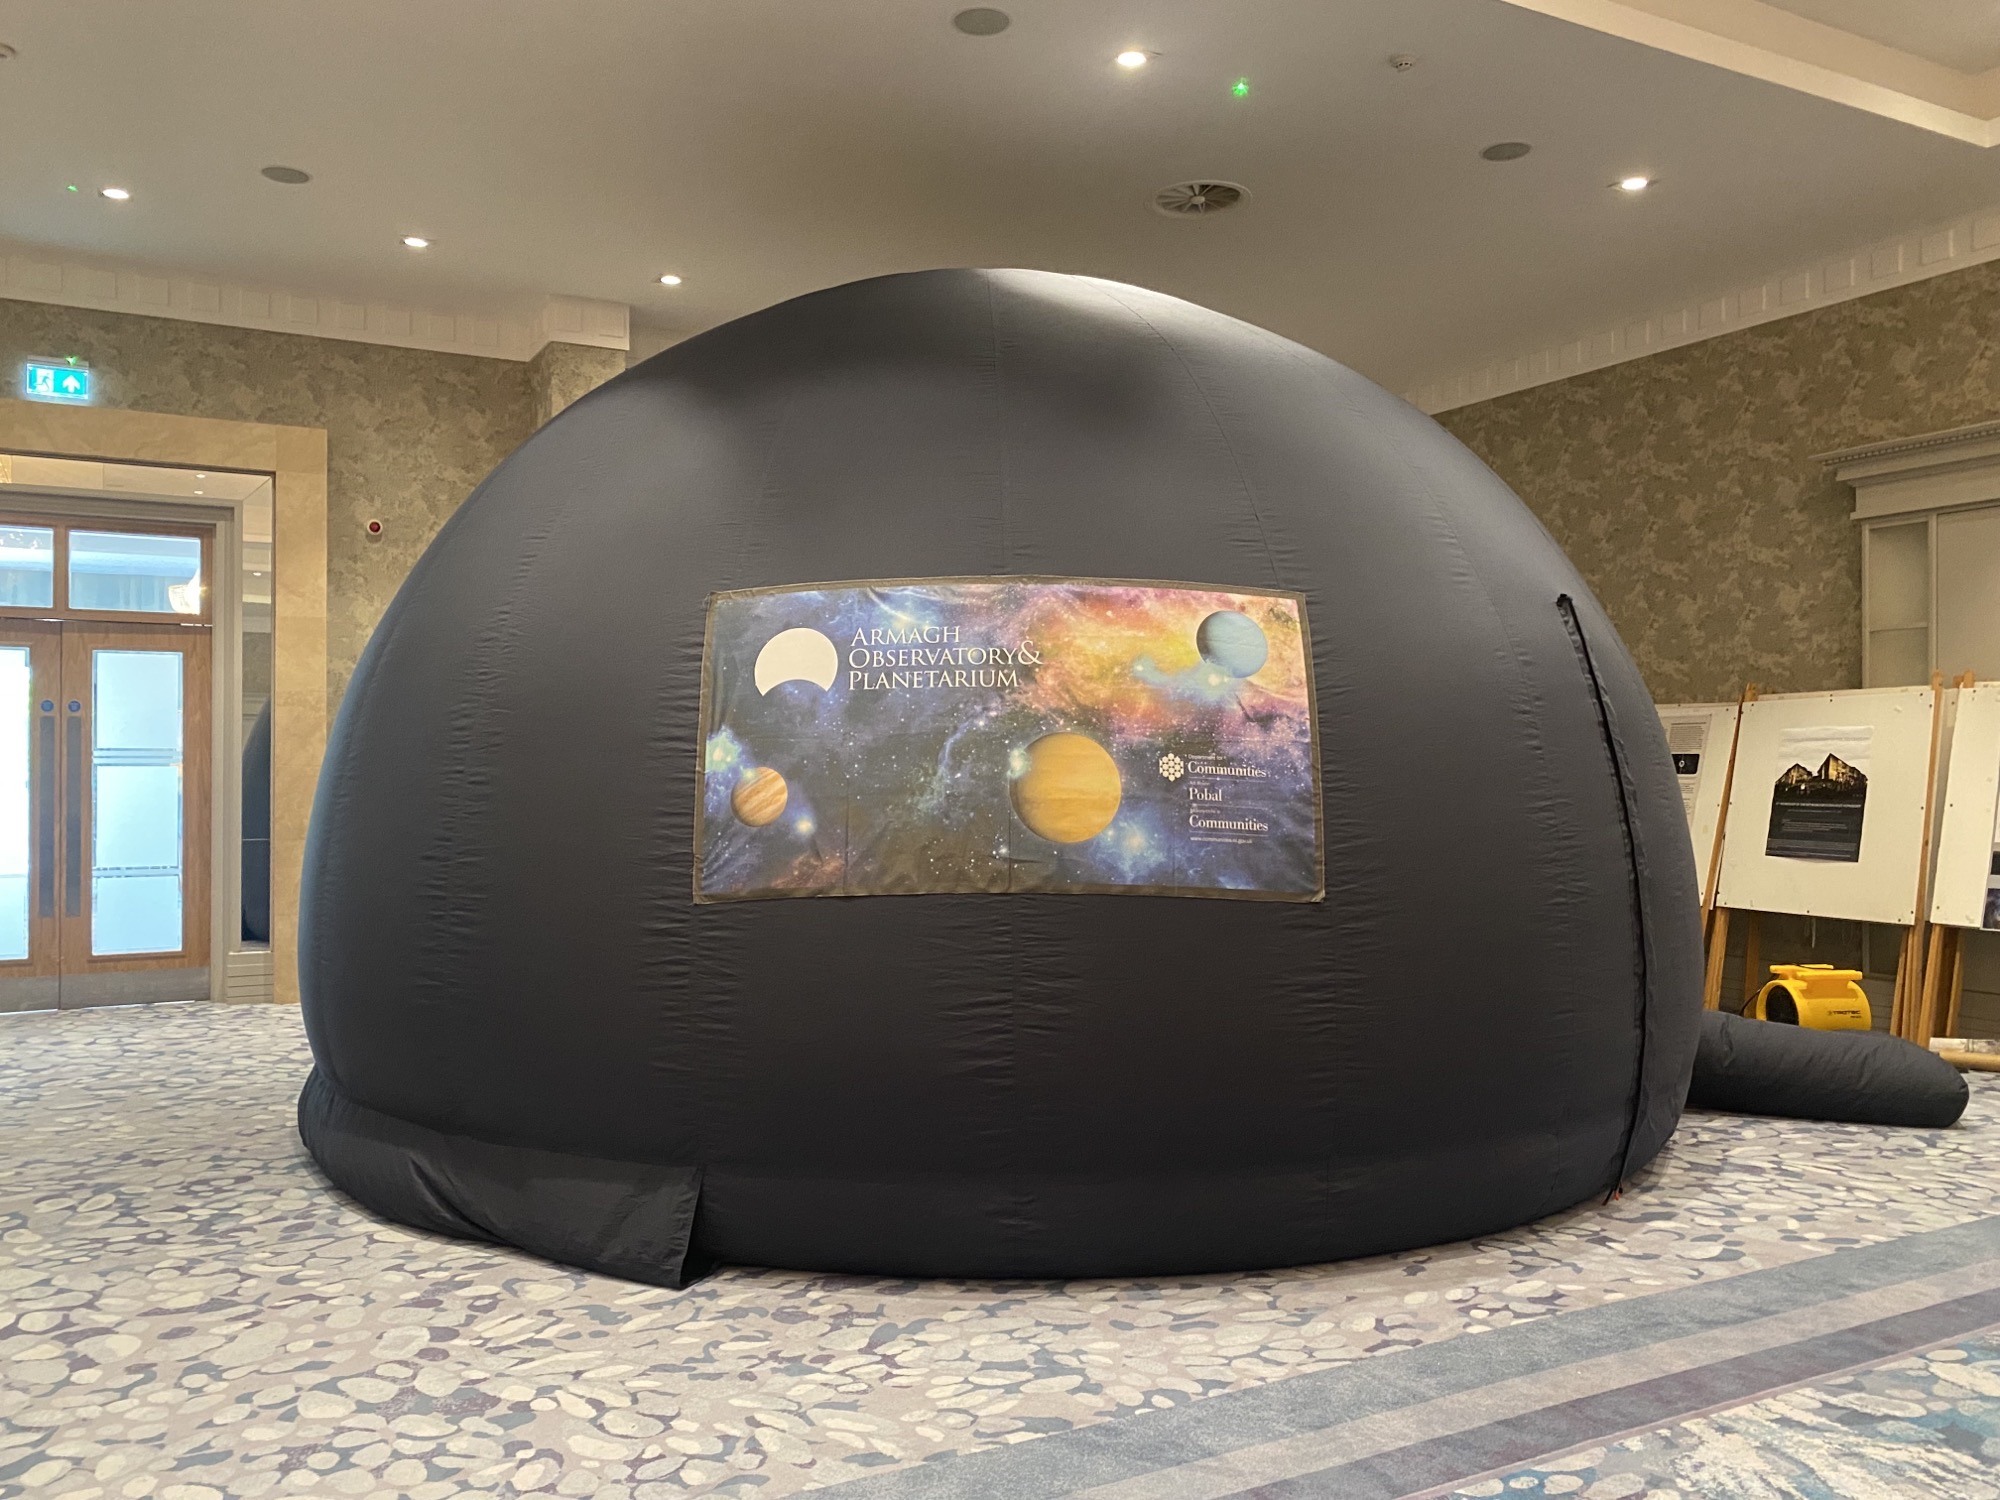 Portable Planetarium